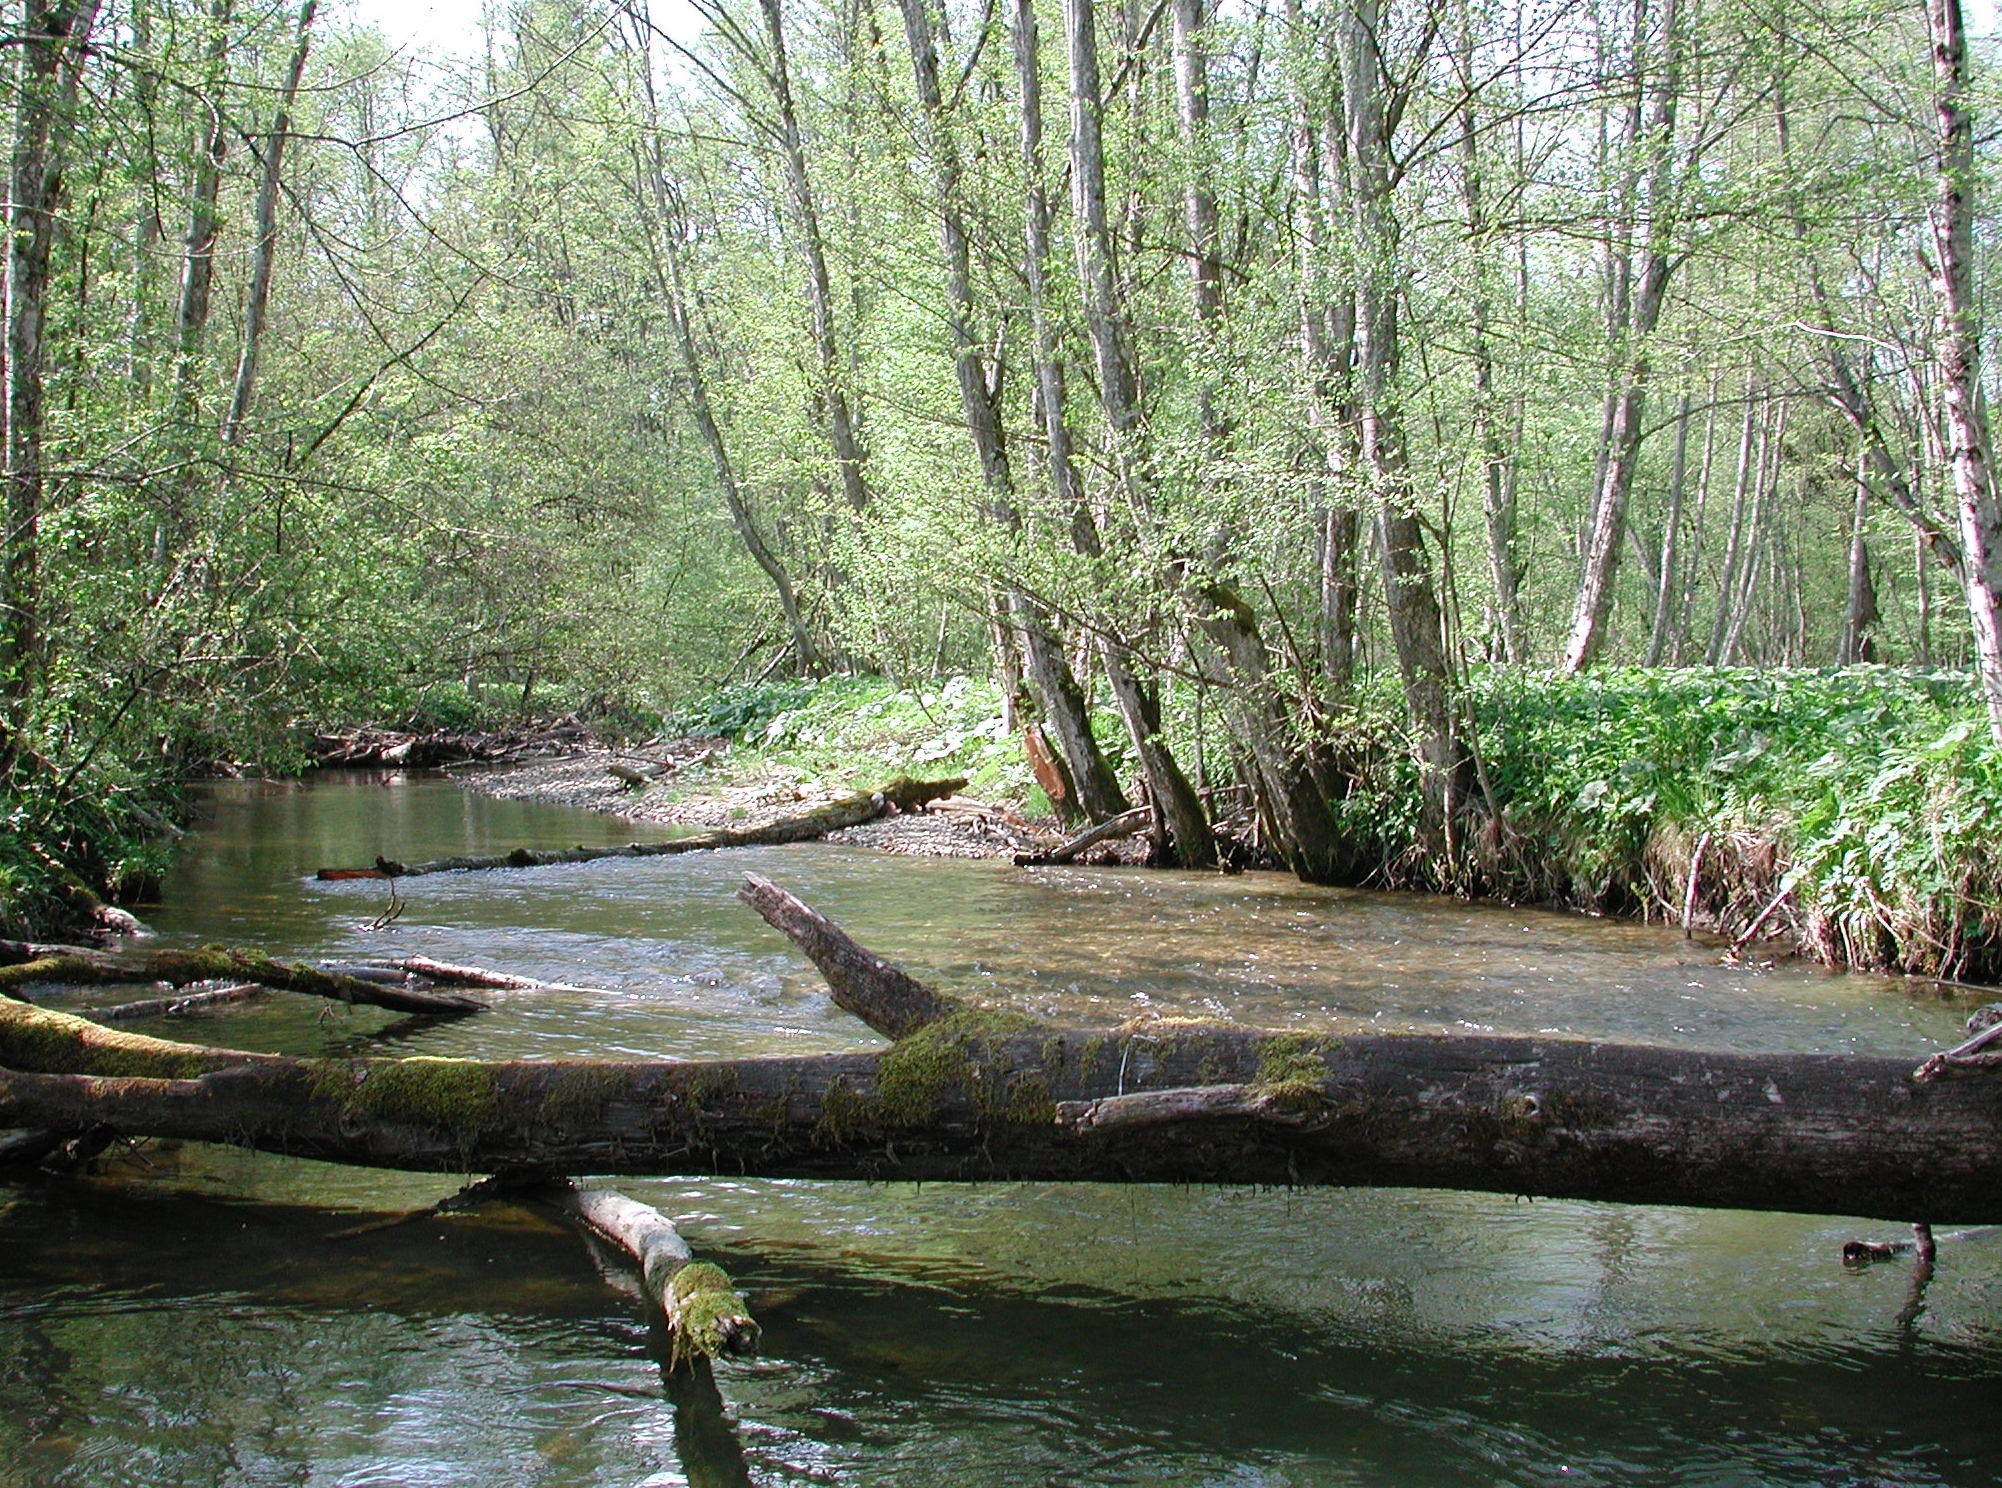 Breiter Fluss, in dem moosbewachsene Baumstämme liegen.